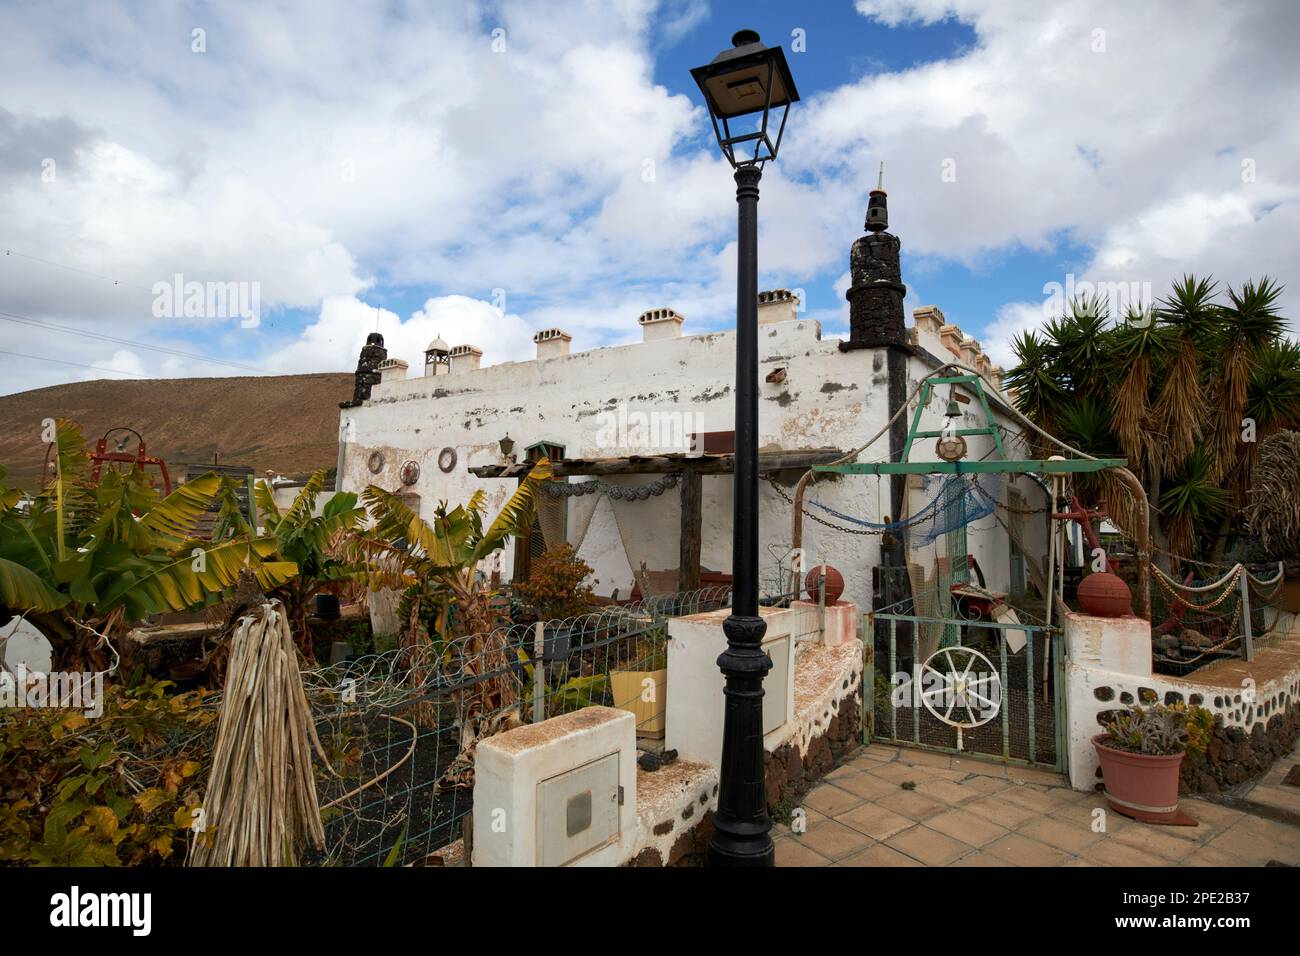 Une des plus insolites casitas de femes petites maisons décorées dans un style beachcomber avec des oddities et des ornements près de femes Lanzarote, Islan des Canaries Banque D'Images